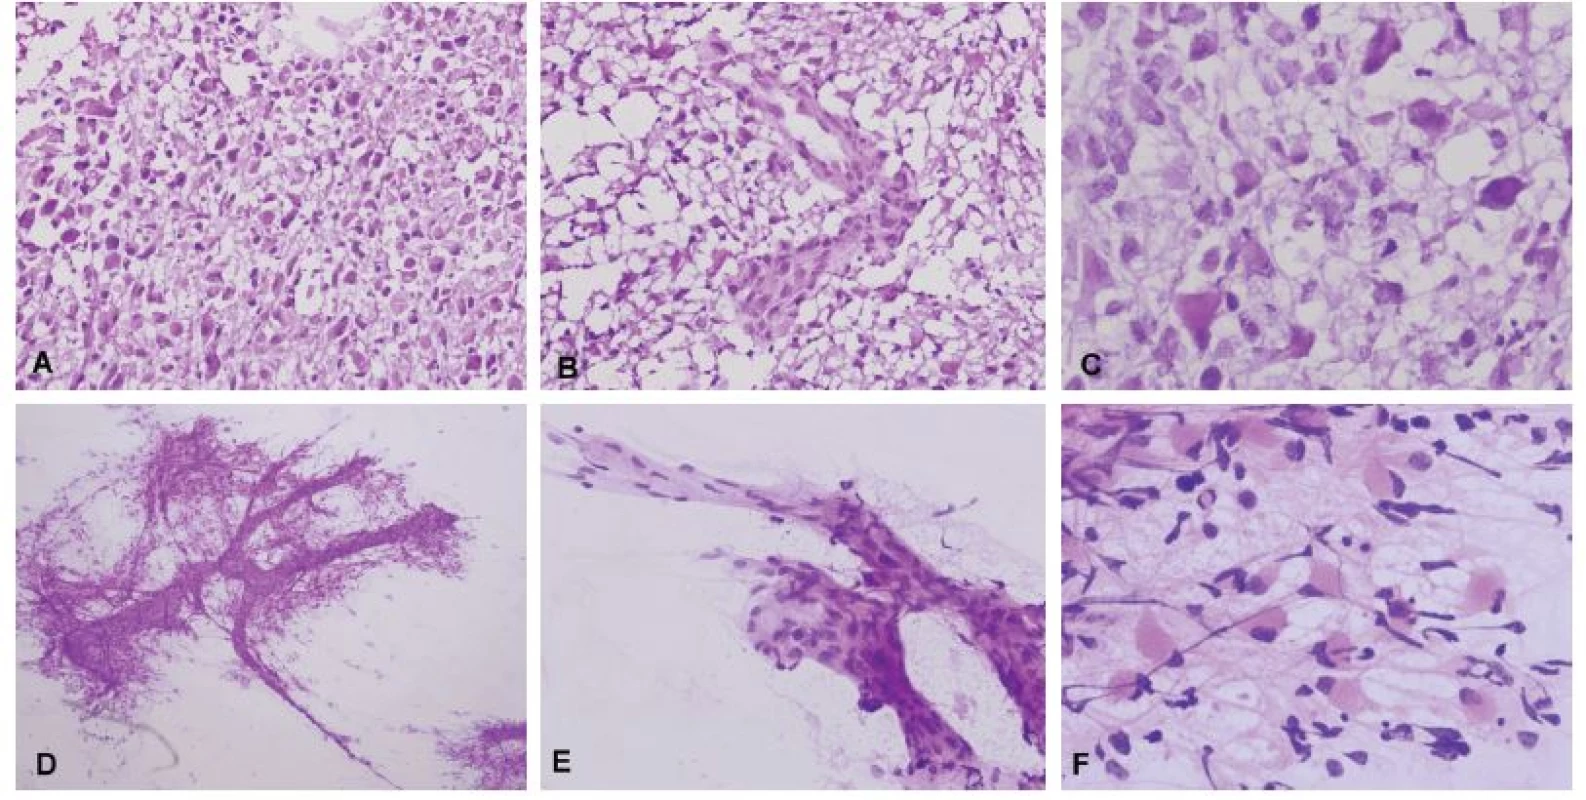 (A) Biopsia tumoru temporálne vpravo u 59-ročného muža. Radiologicky suspekný high-grade glióm. V zmrazených rezoch bol zachytený hypercelulárny
tumor tvorený atypickými bunkami s objemnou cytoplazmou. (B) Mikrovaskulárna proliferácia. (C) Detail cytologických atypií v zmrazenom reze, prítomné
boli početné mitózy. (D) V náterovej cytológii bolo možné pozorovať abnormálne cievy (mikrovaskulárna proliferácia), ku ktorým boli gliálnymi výbežkami
pripojené nádorové bunky. (E) Detail mikrovaskulárnej proliferácie. (F) Atypické bunky s gemistocytickou morfológiou na fibrilárnom pozadí. Peroperačná
diagnóza: high-grade glióm – glioblastóm. Definitívna diagnóza: Glioblastóm, Grade IV.